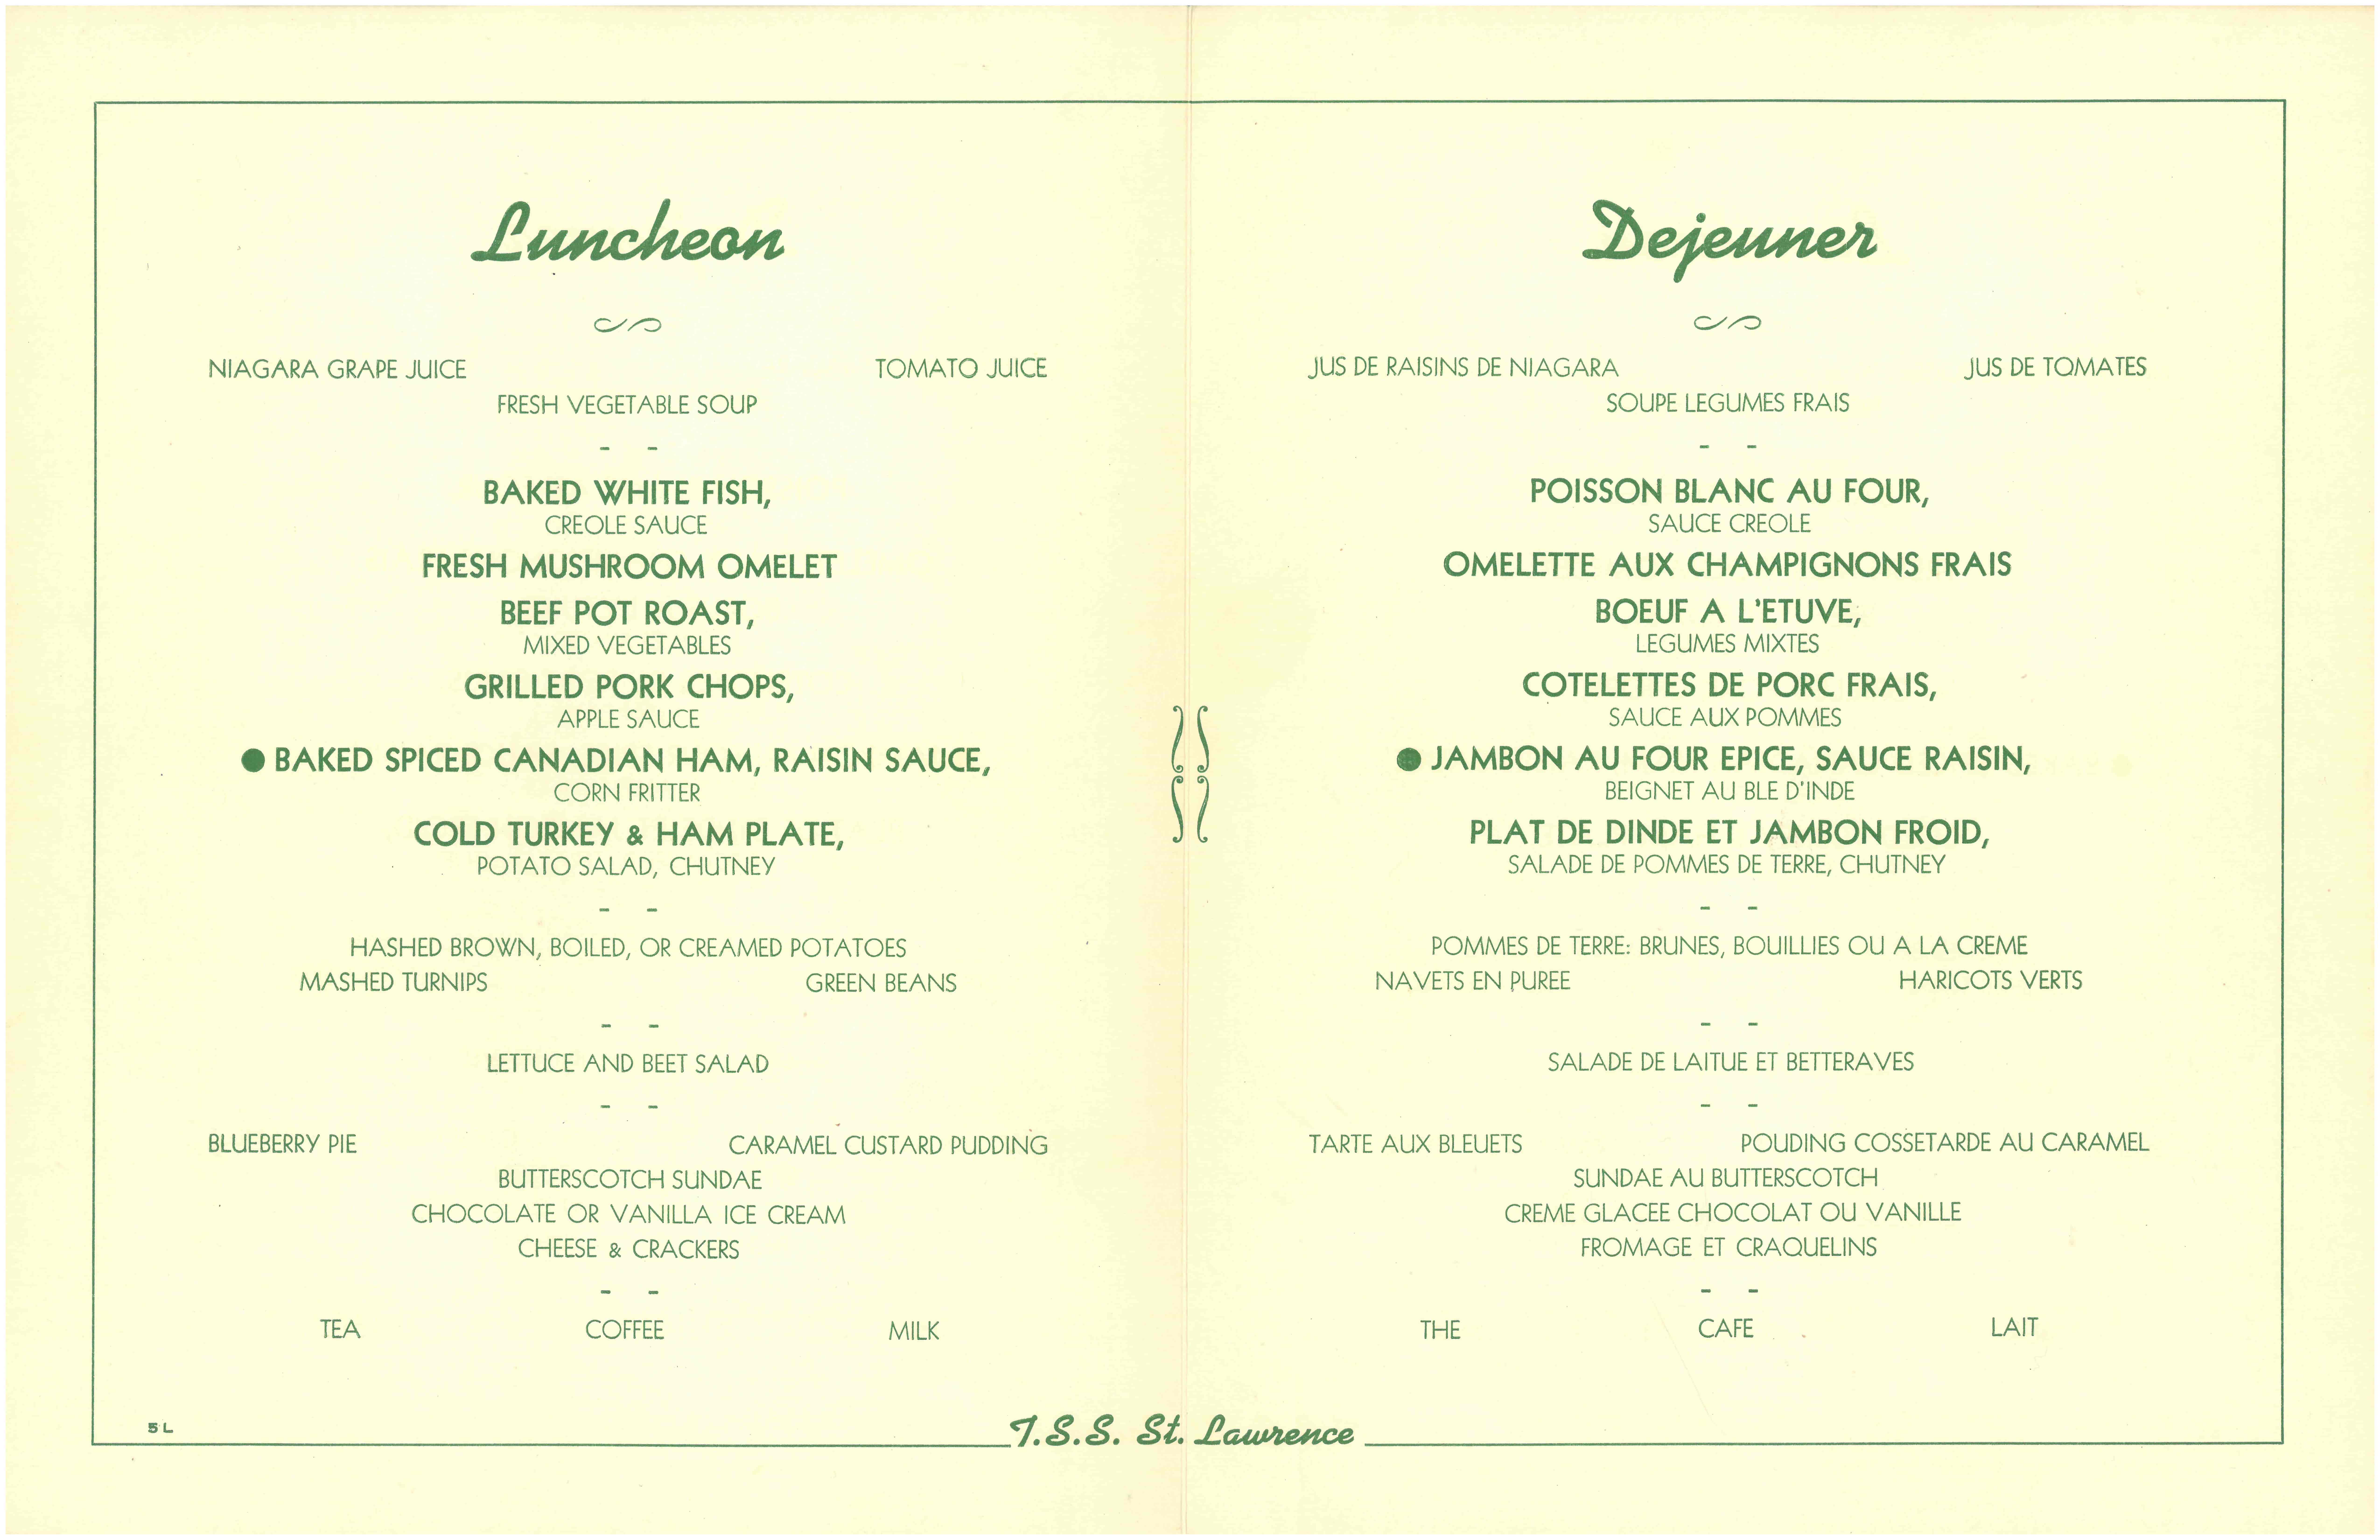 A bilingual menu.